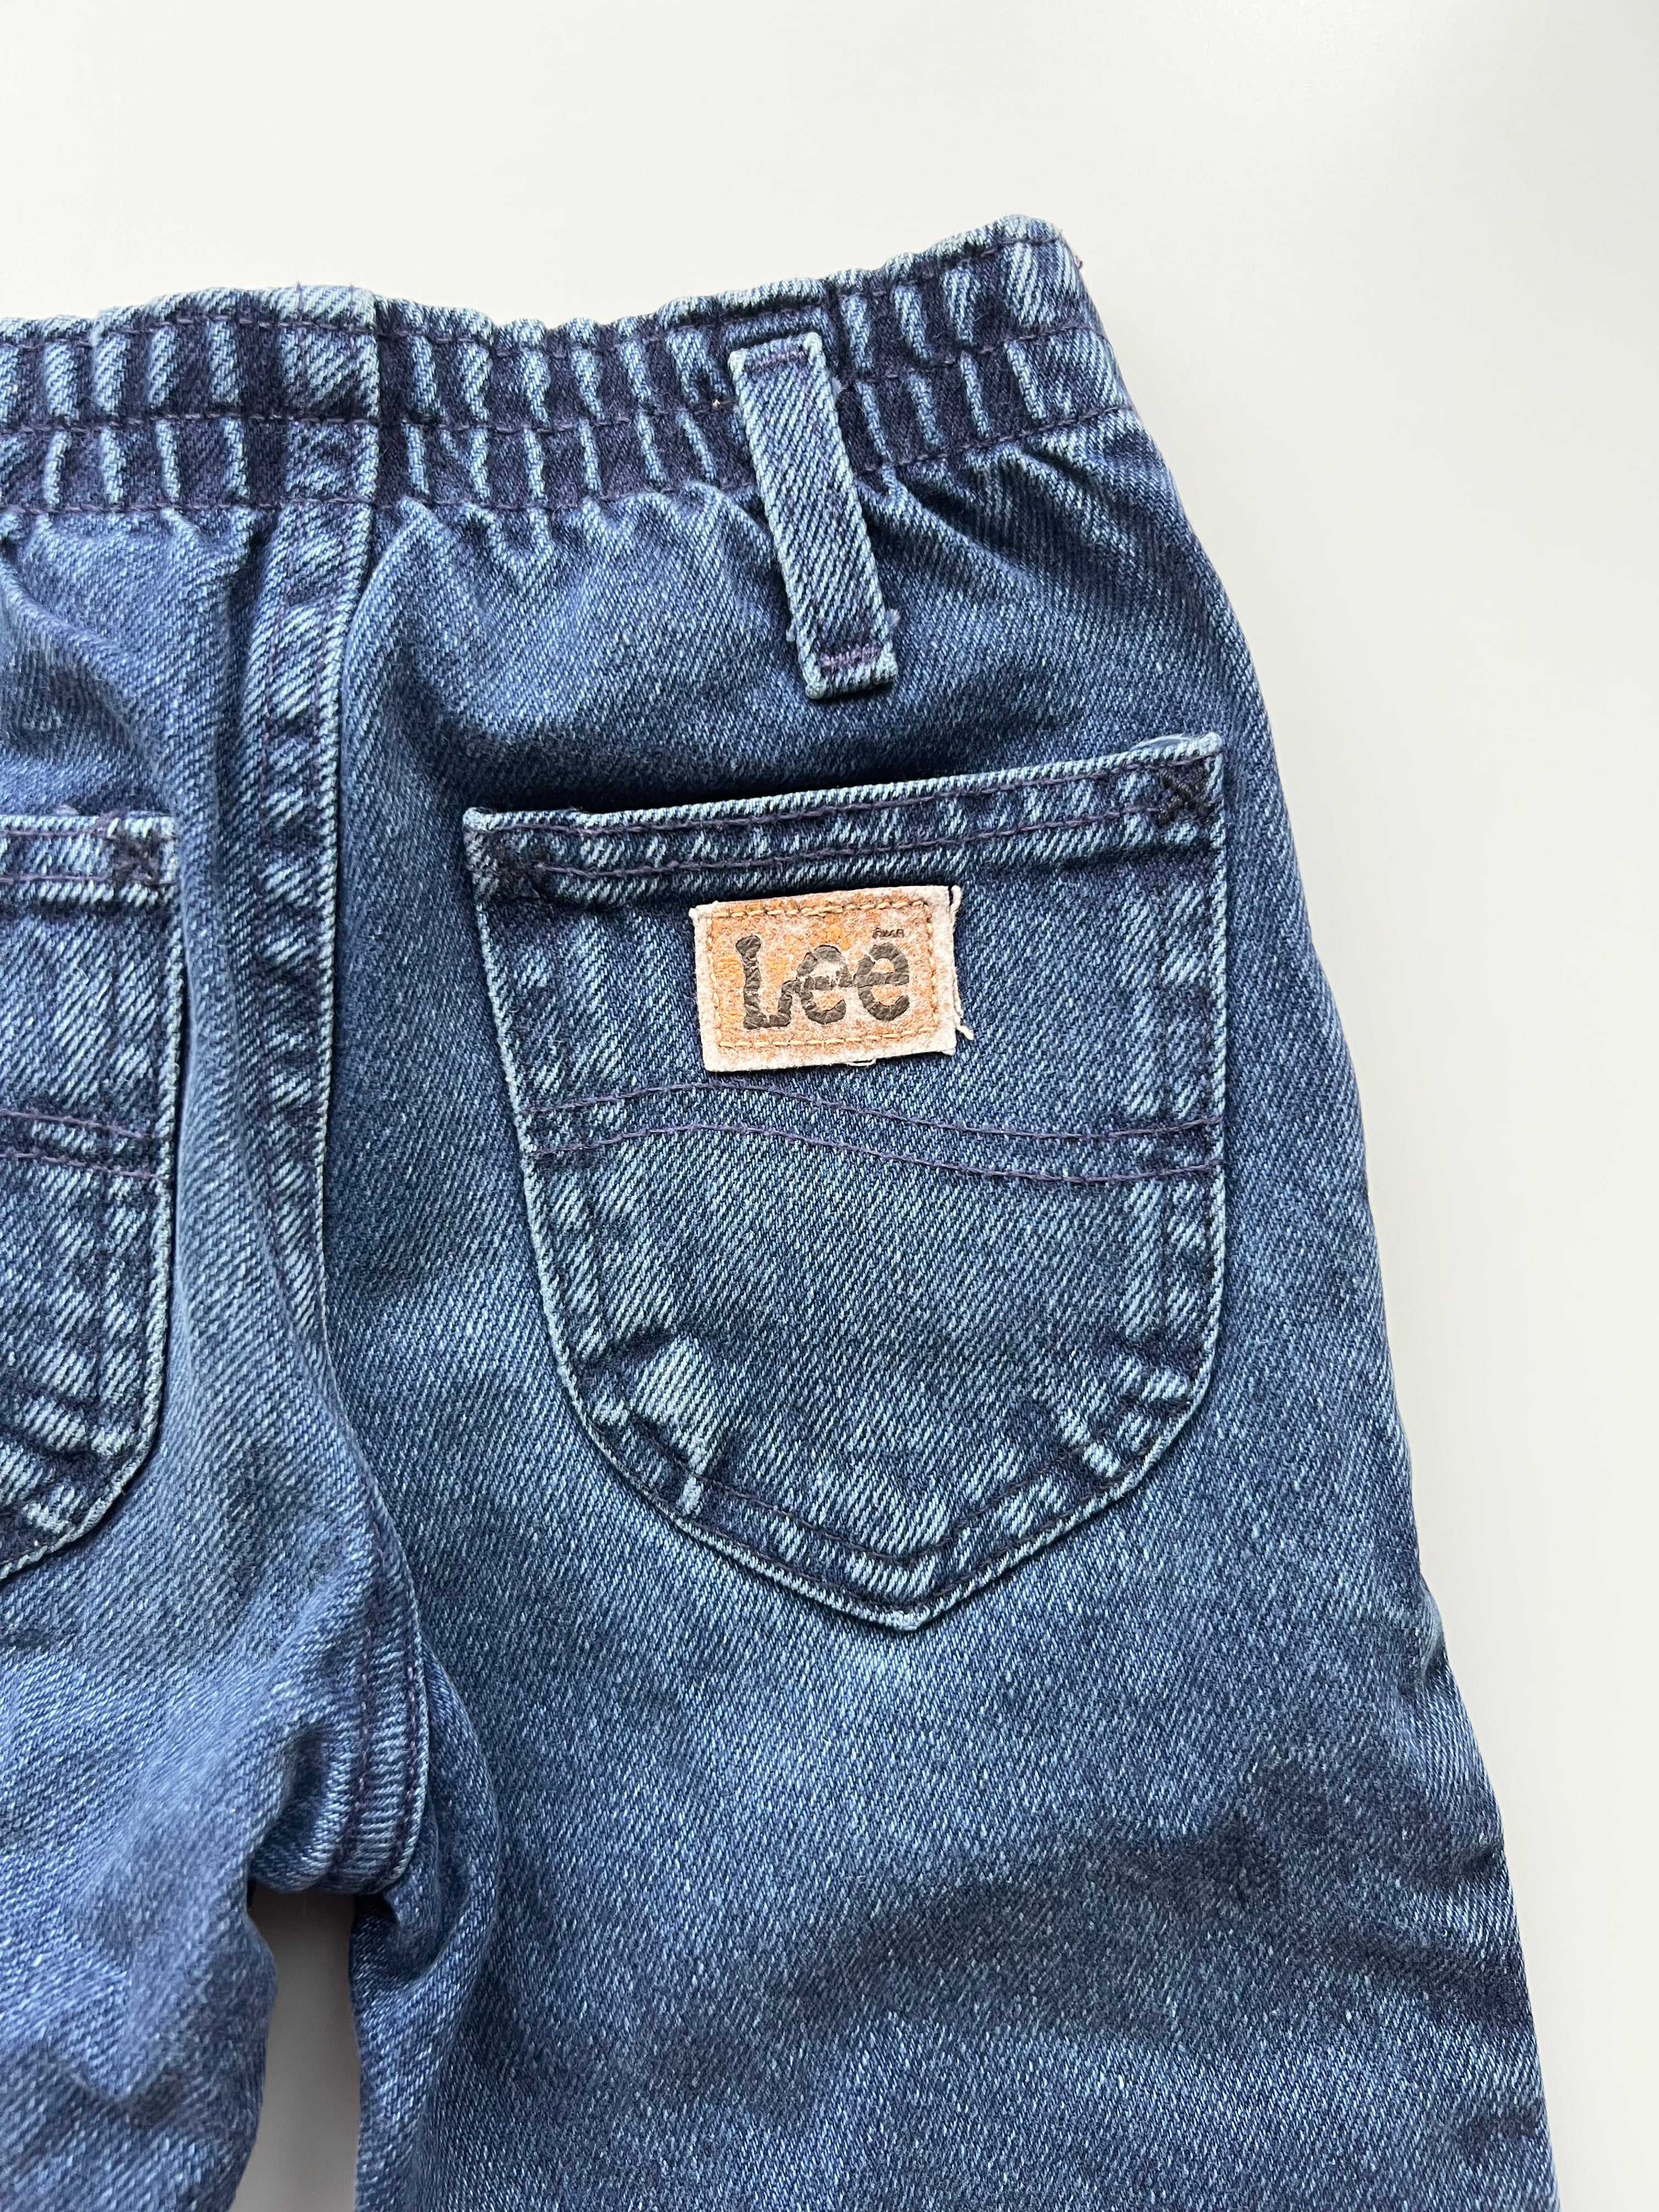 Lee Vintage Dark Wash Perfect Jeans Age 4